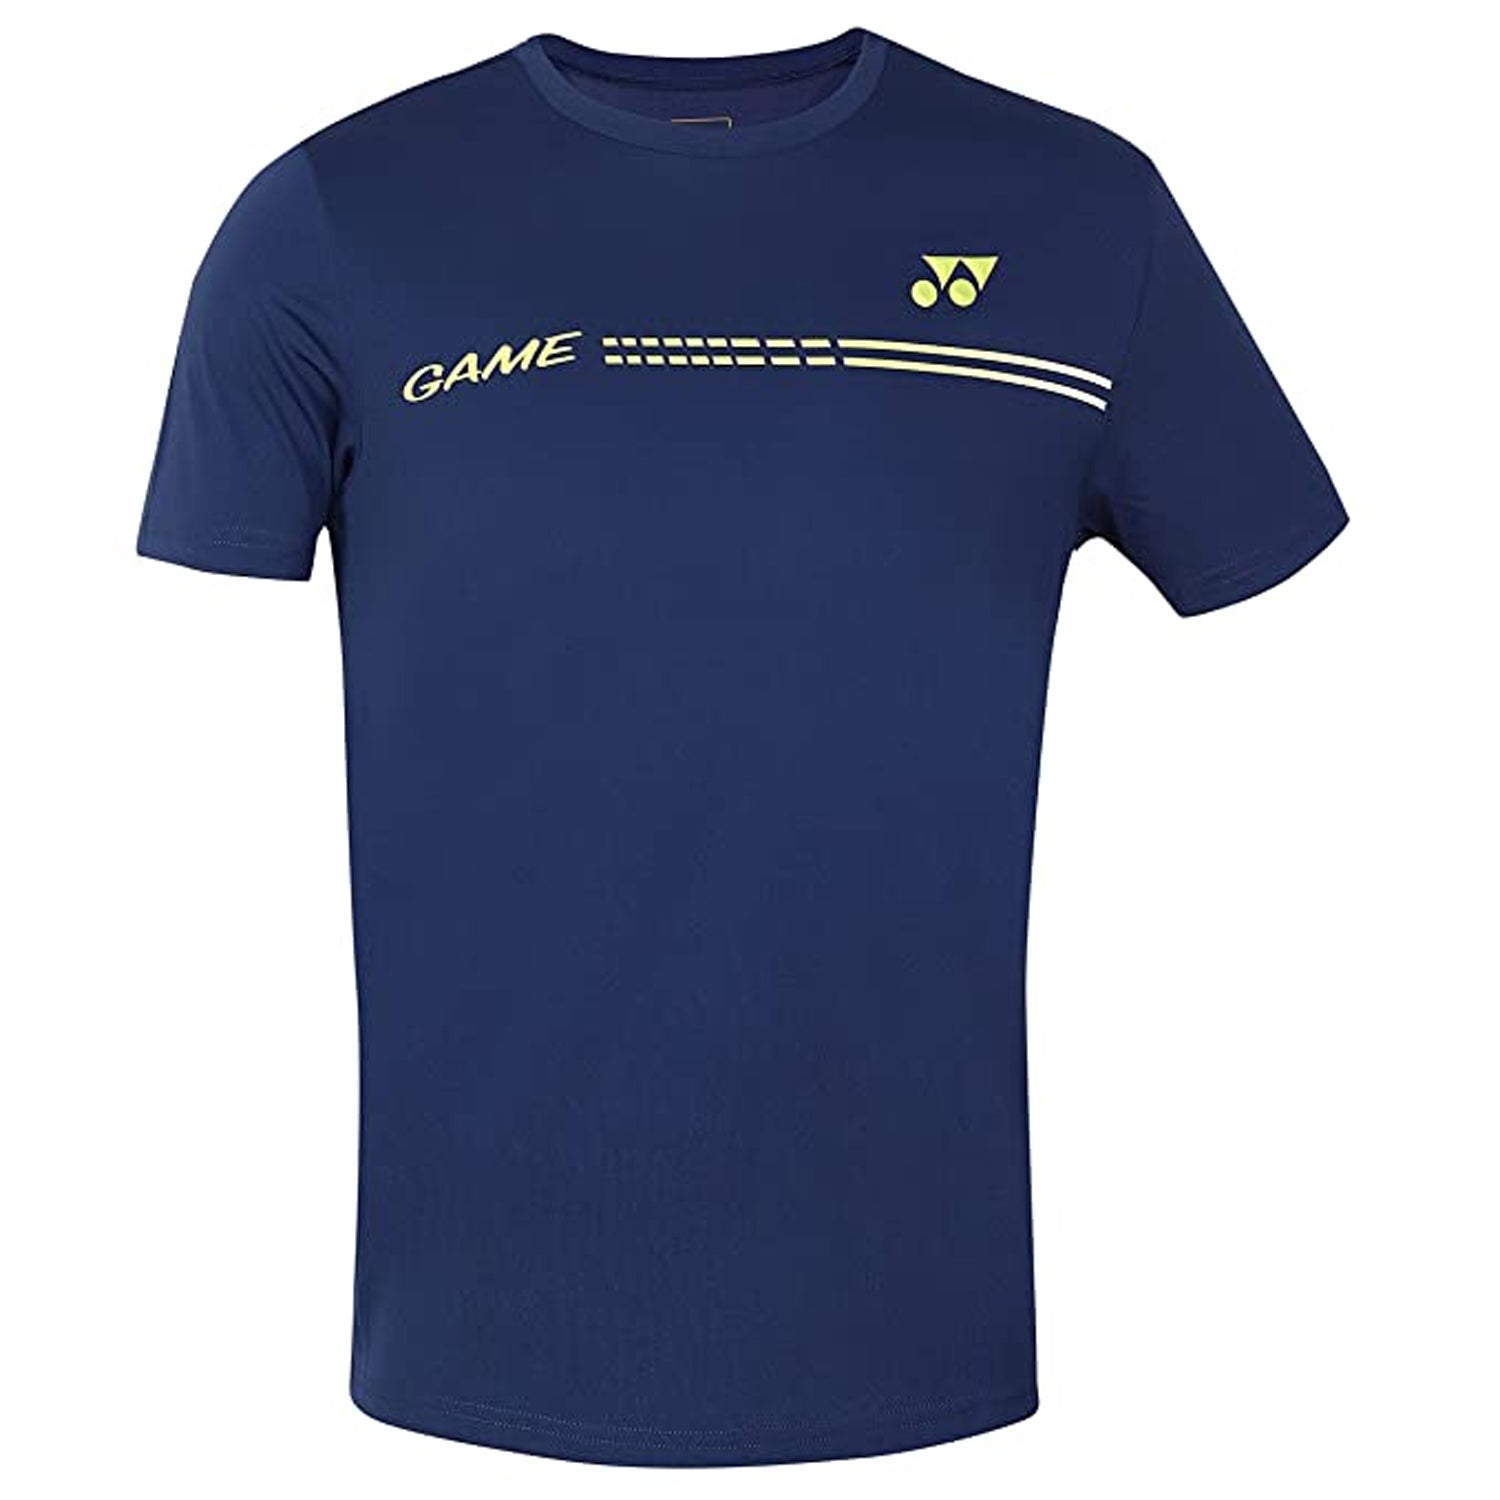 Yonex 2313 Easy22 Junior Round Neck T-Shirt - Best Price online Prokicksports.com